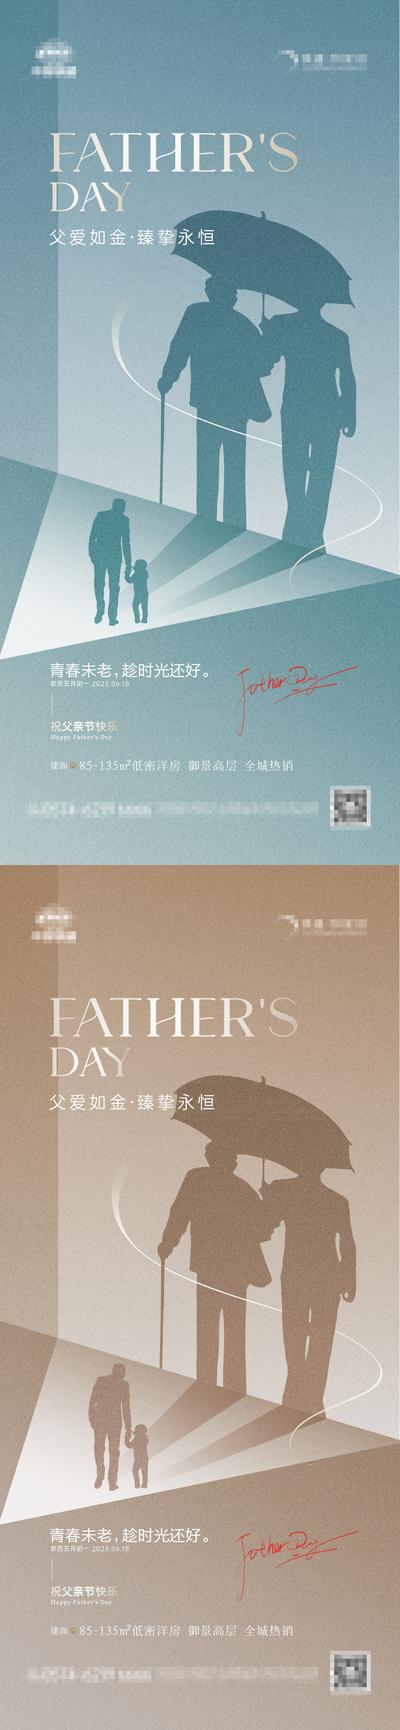 南门网 海报 房地产 公历节日 父亲节 父子 时光 剪影